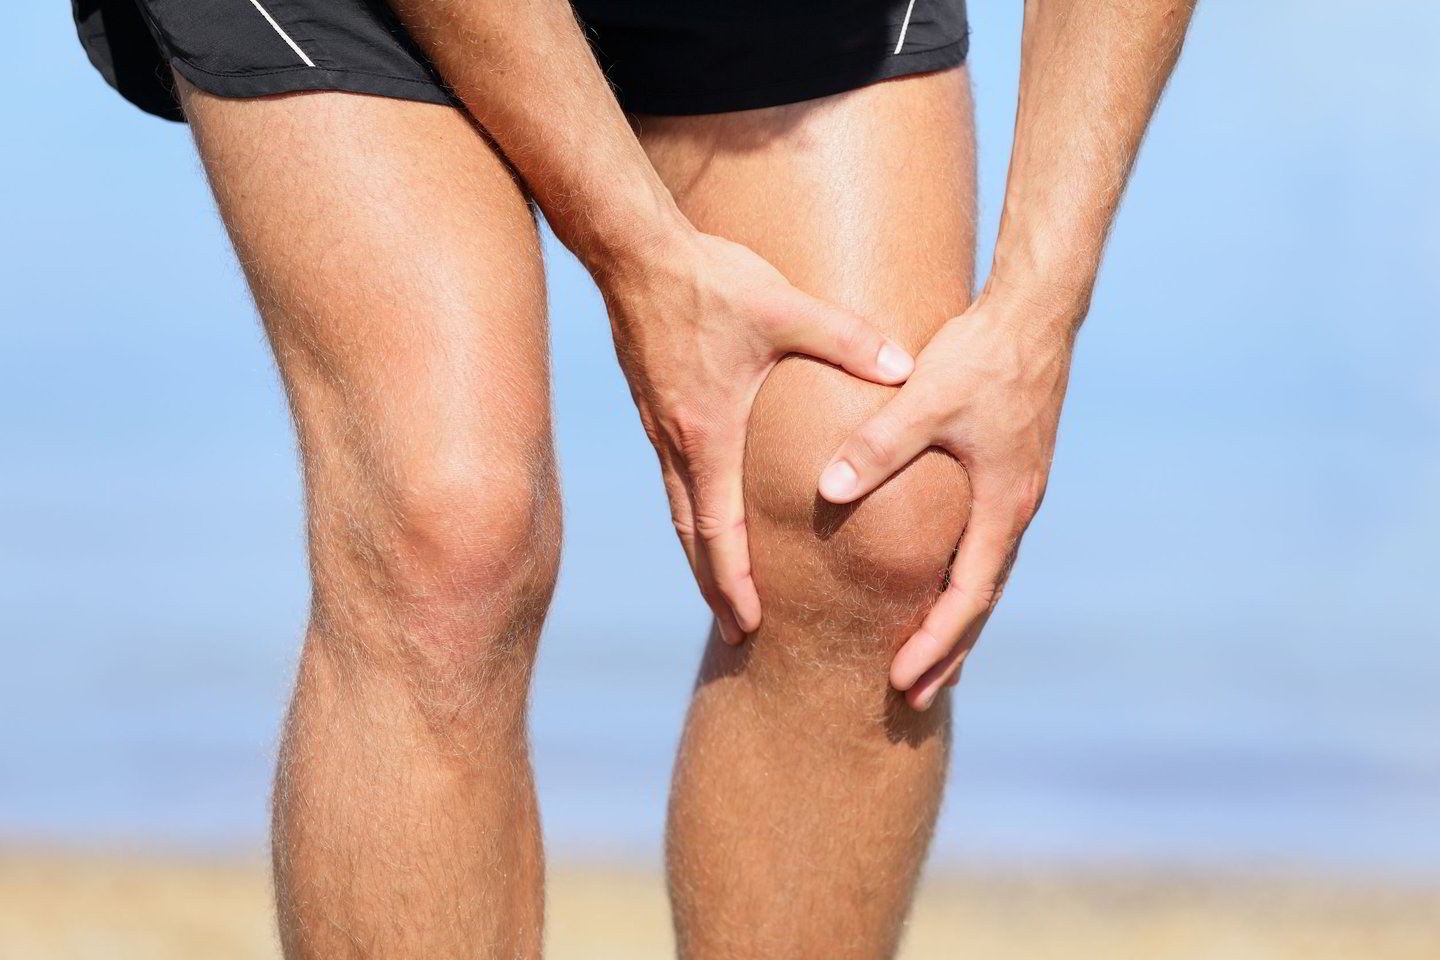 medžiaga gauta iš skausmo sąnarių artrozė 1 laipsnis pėdos gydymas